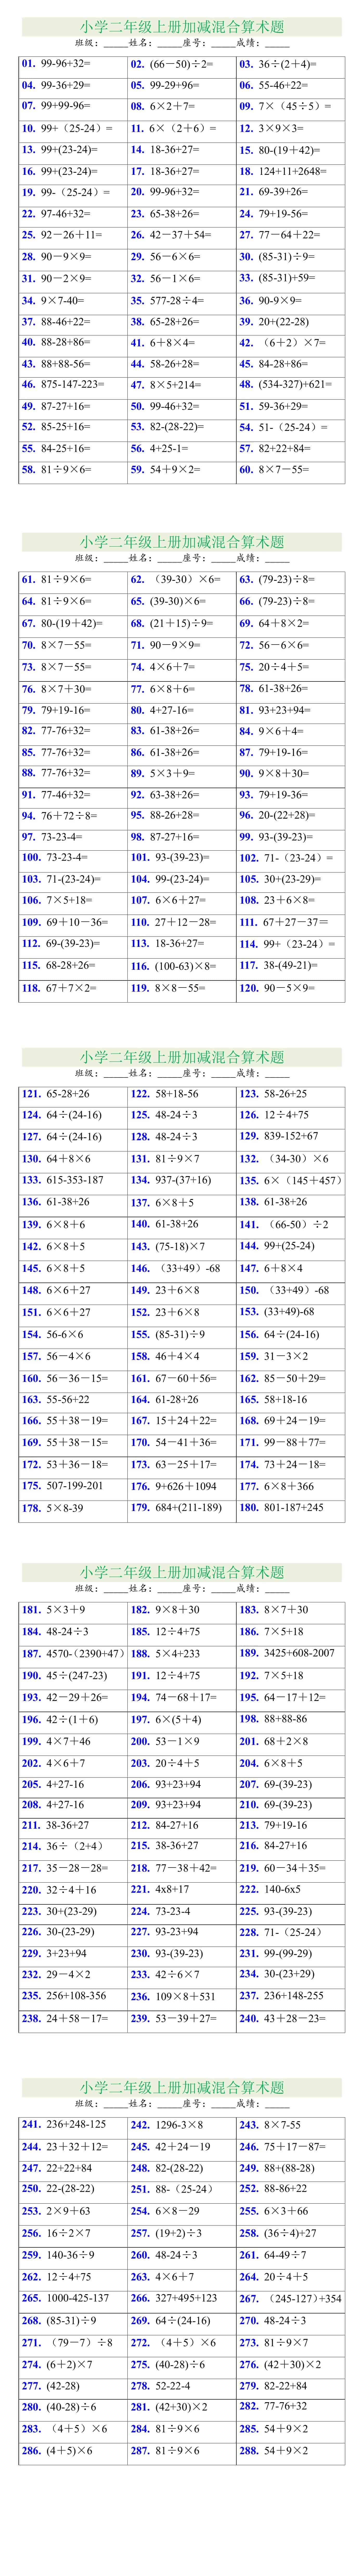 二年级数学上册加减乘除混合计算题288道